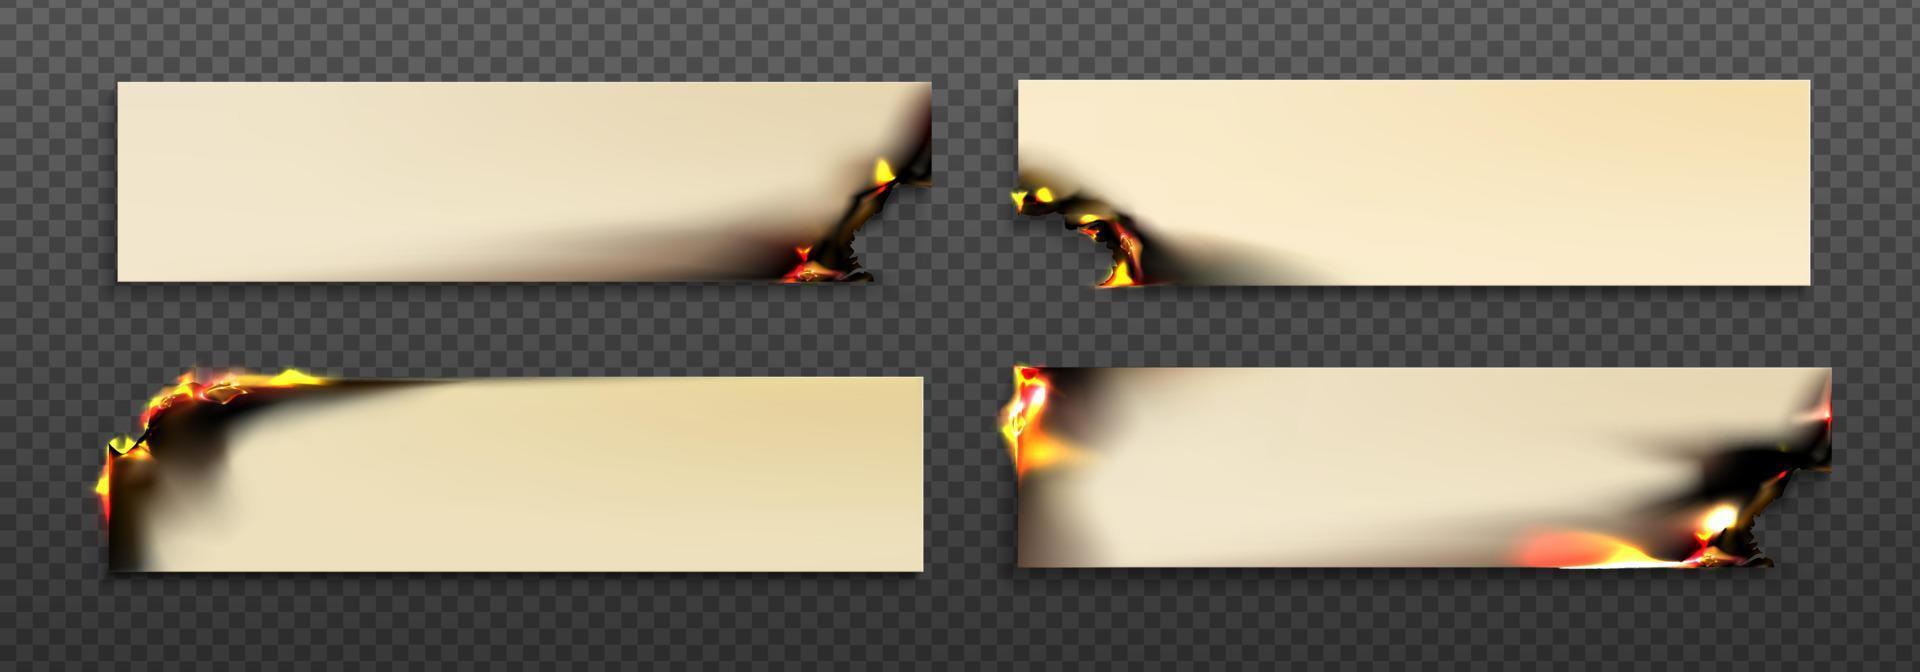 brandend rechthoek papier lakens met brand vector